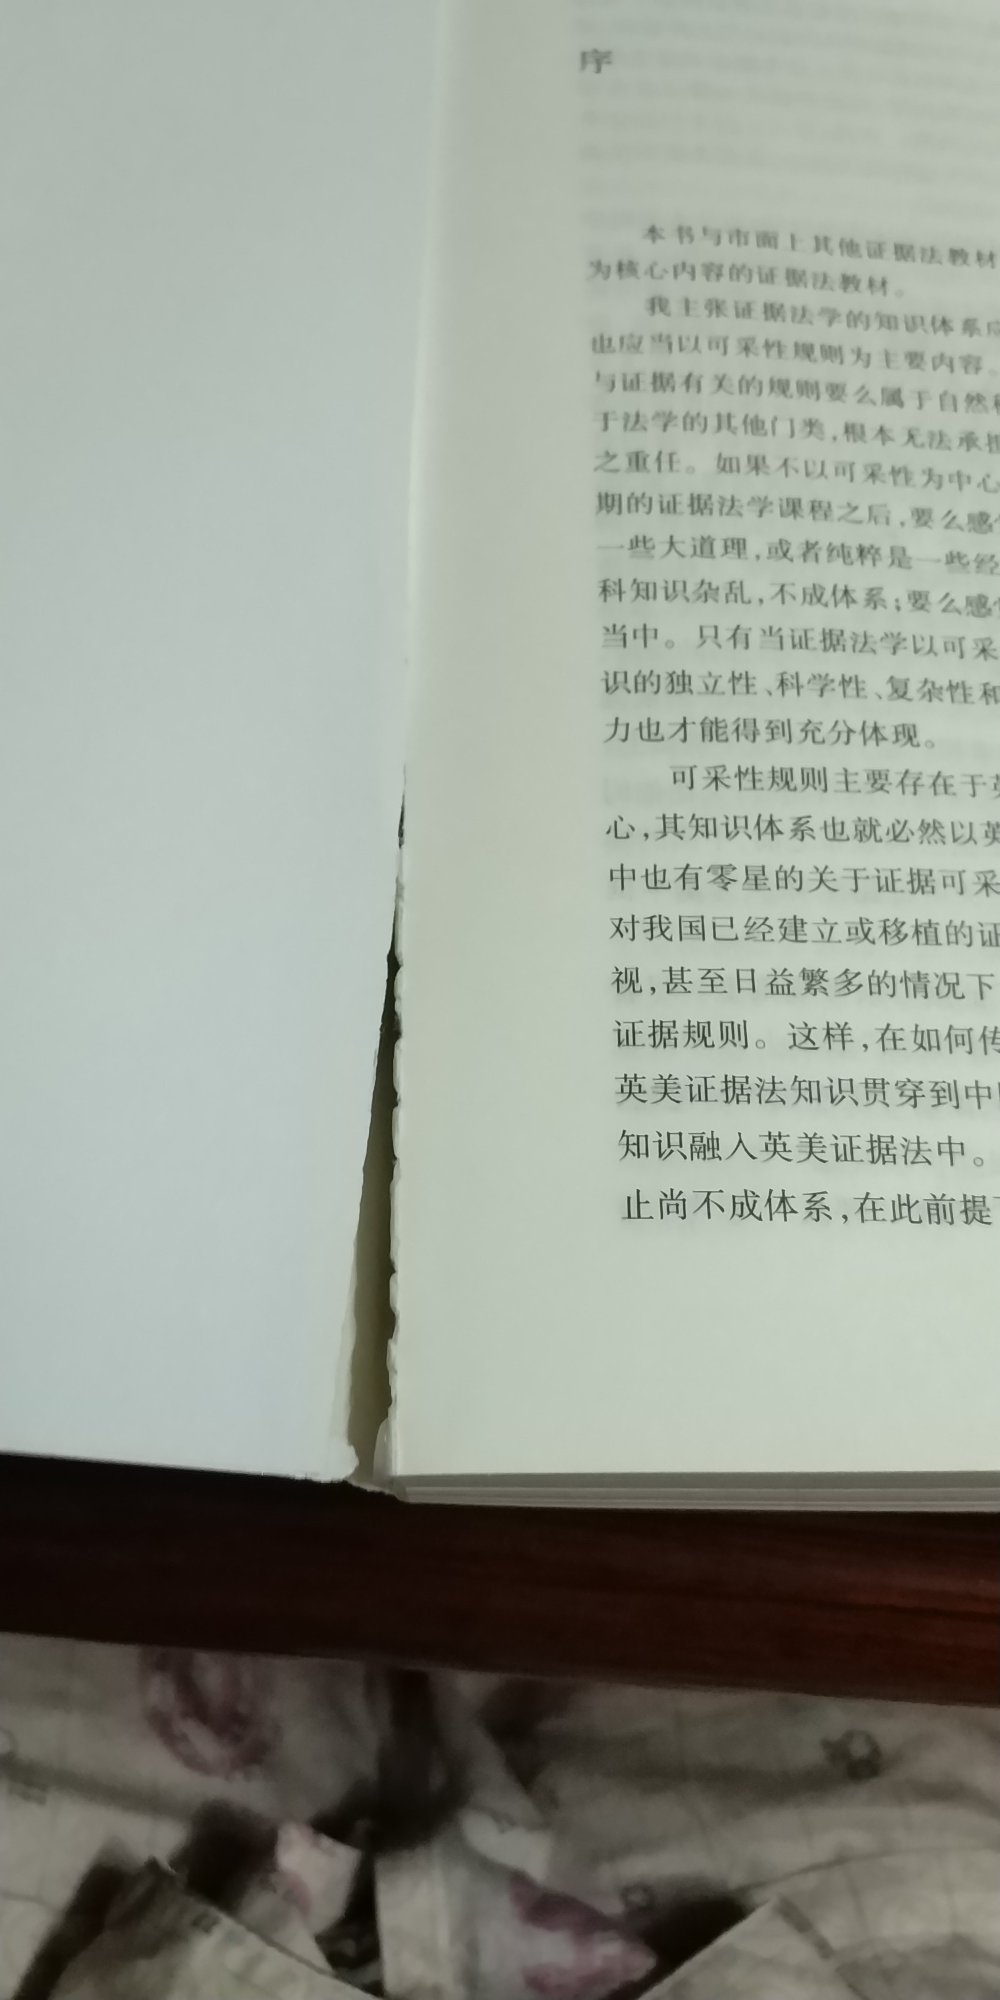 书刚翻开第一页，就裂开了，什么质量。